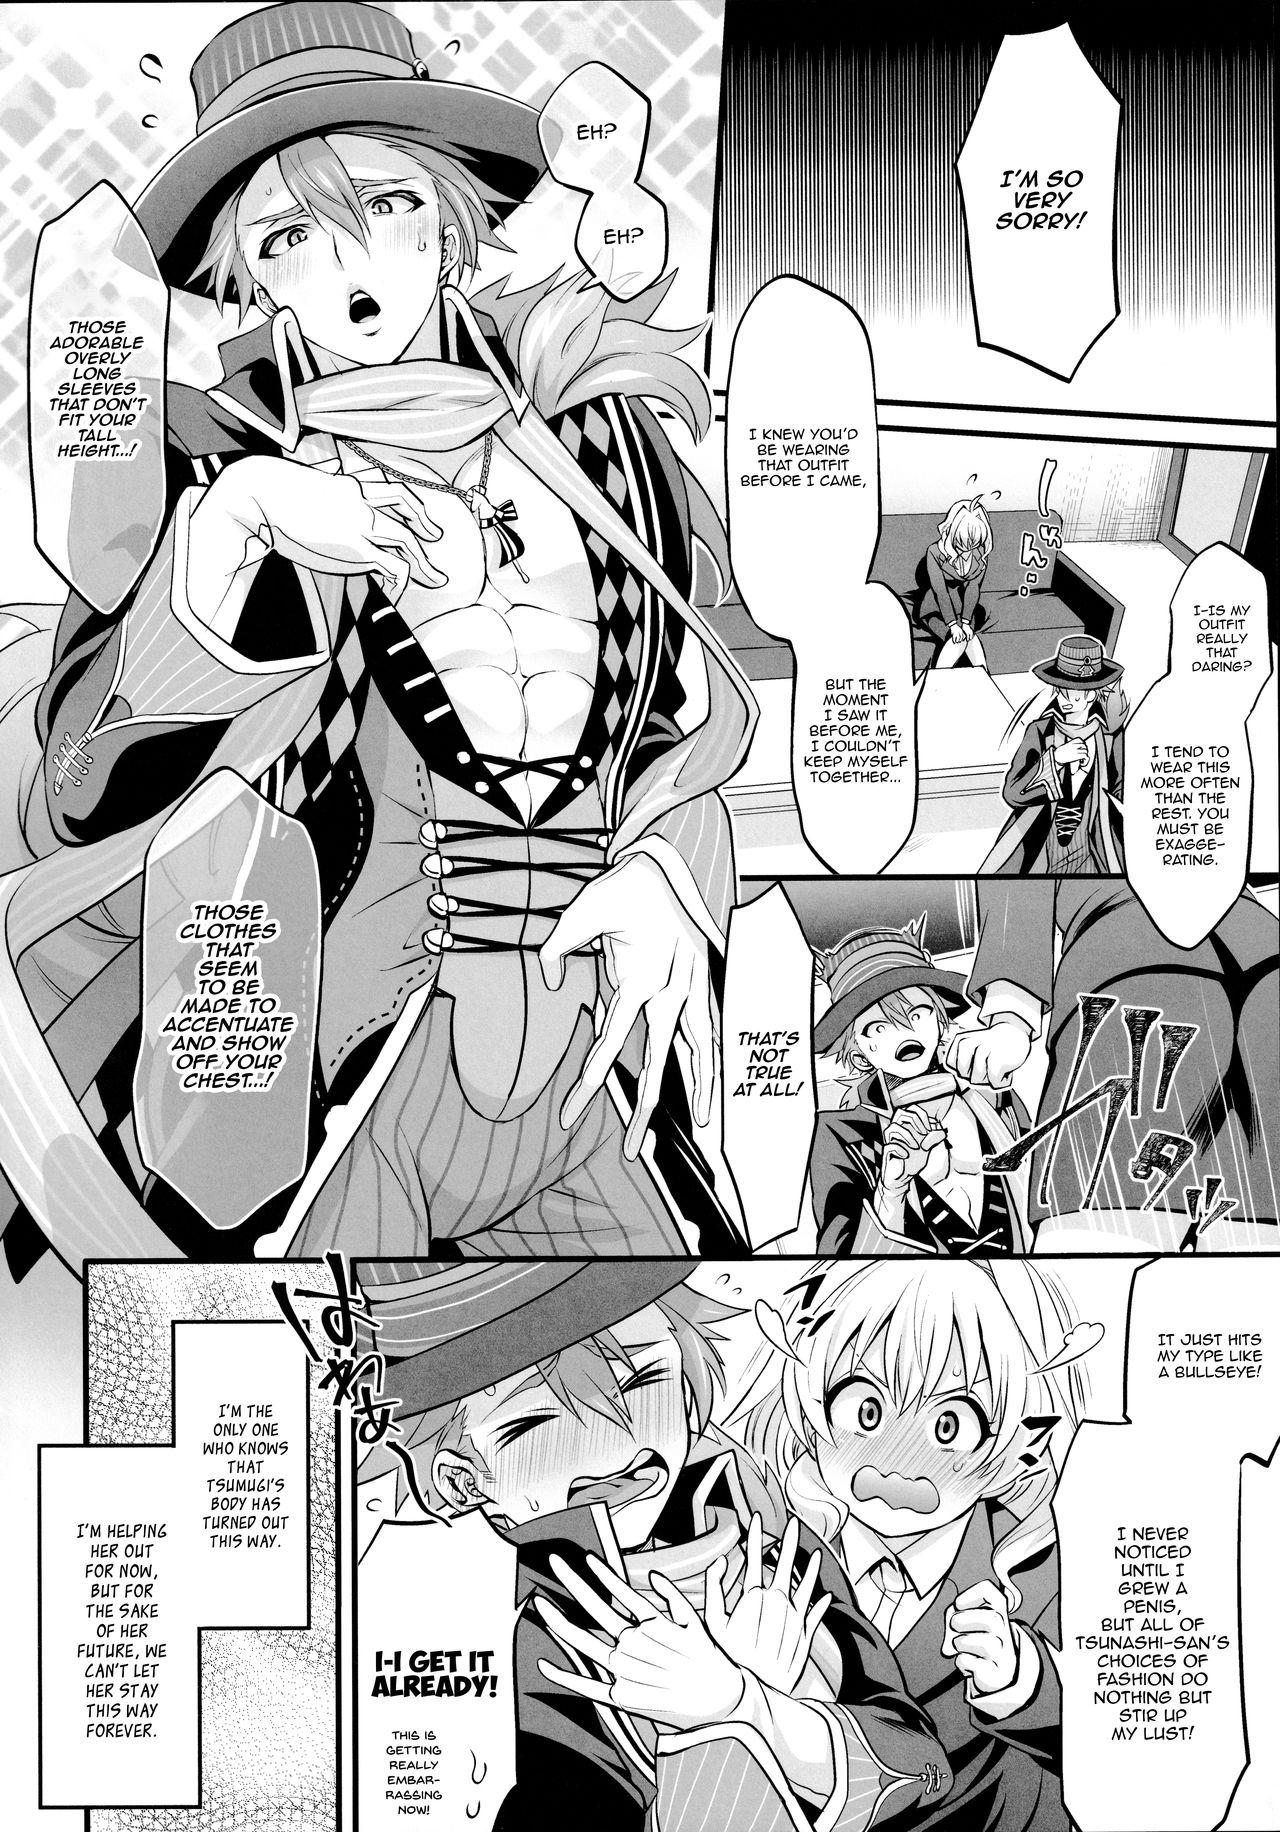 Tiny Girl Watashi no Ochinchin ga Amaeta Gatterun Desu! | My Penis Wants to Fawn on Him! - Idolish7 Soft - Page 4